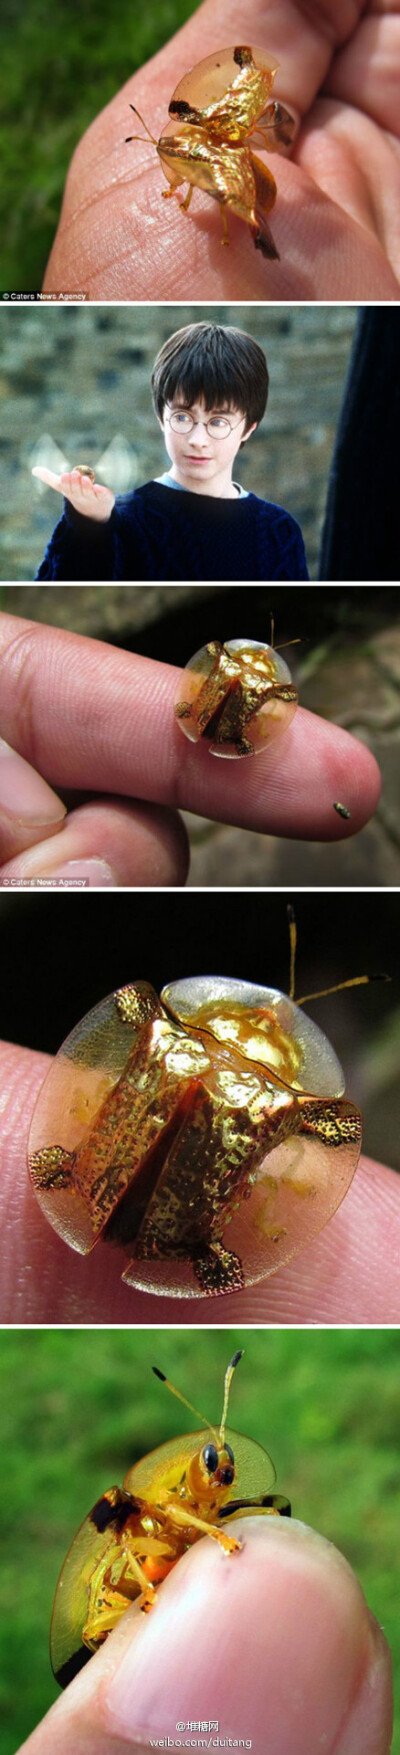 【麻瓜世界里の金色飞贼】一位摄影师在印度抓拍的金色龟甲虫,像极了